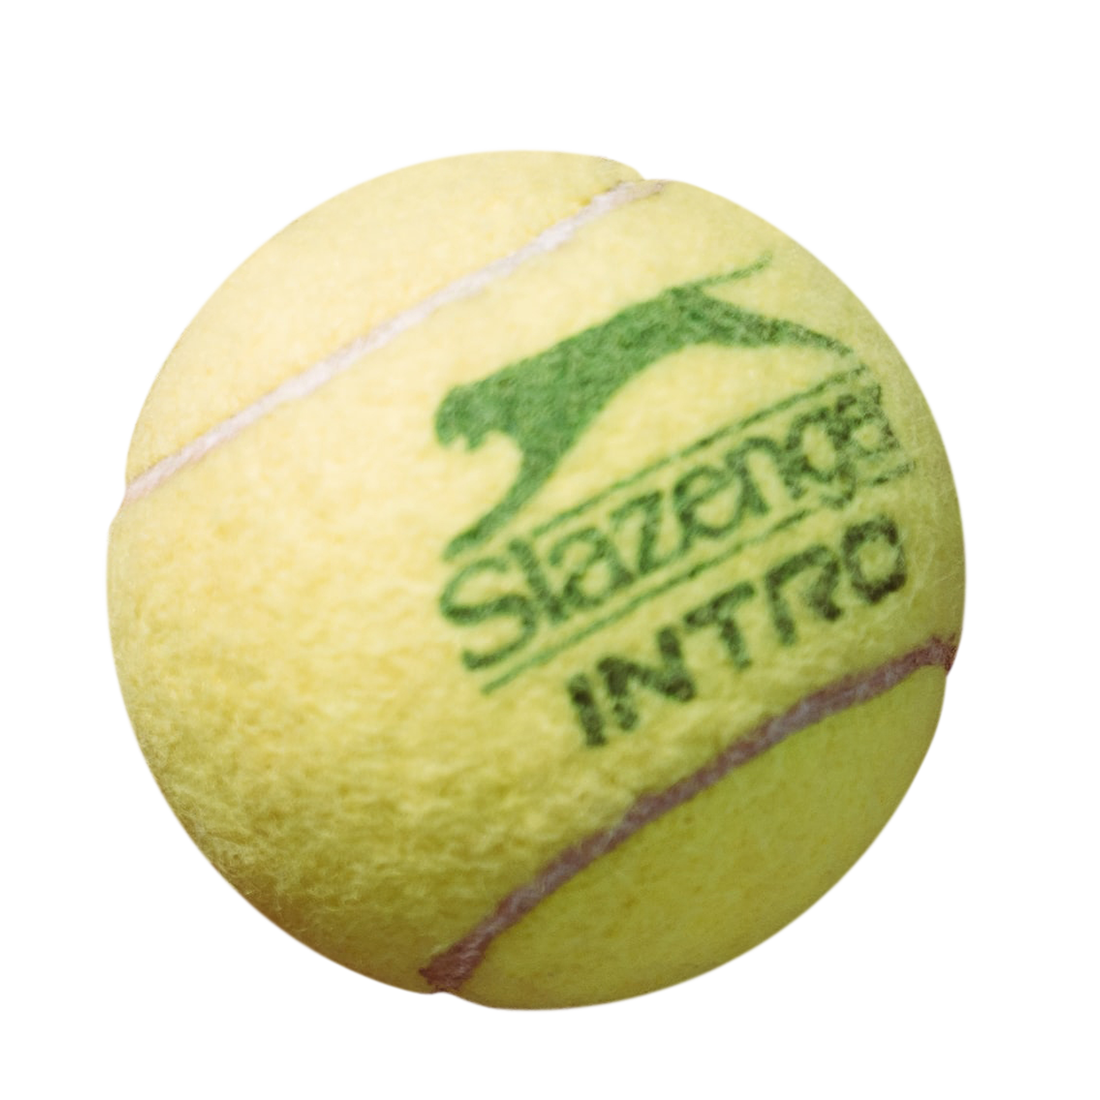 tennis ball, tennis ball png, tennis ball PNG image, transparent tennis ball png image, tennis ball png full hd